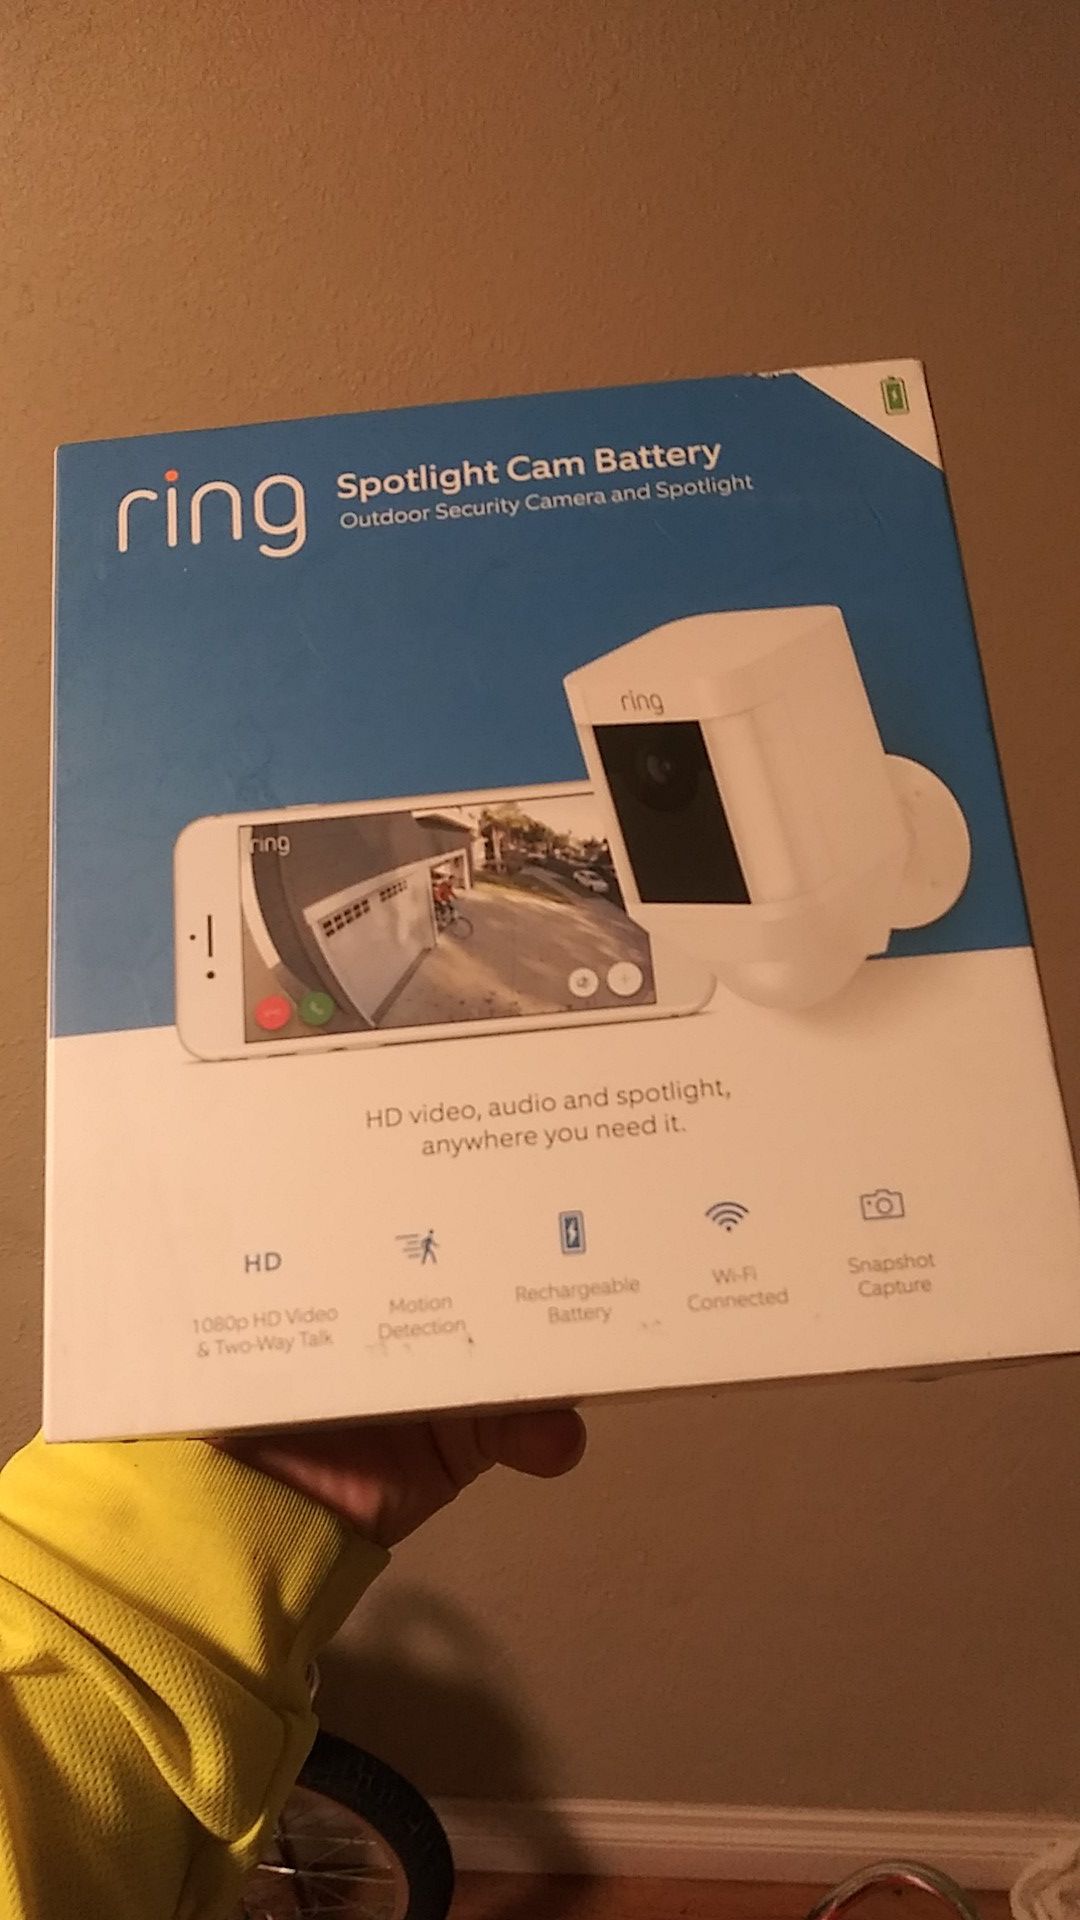 Ring outdoor security spotlight camera